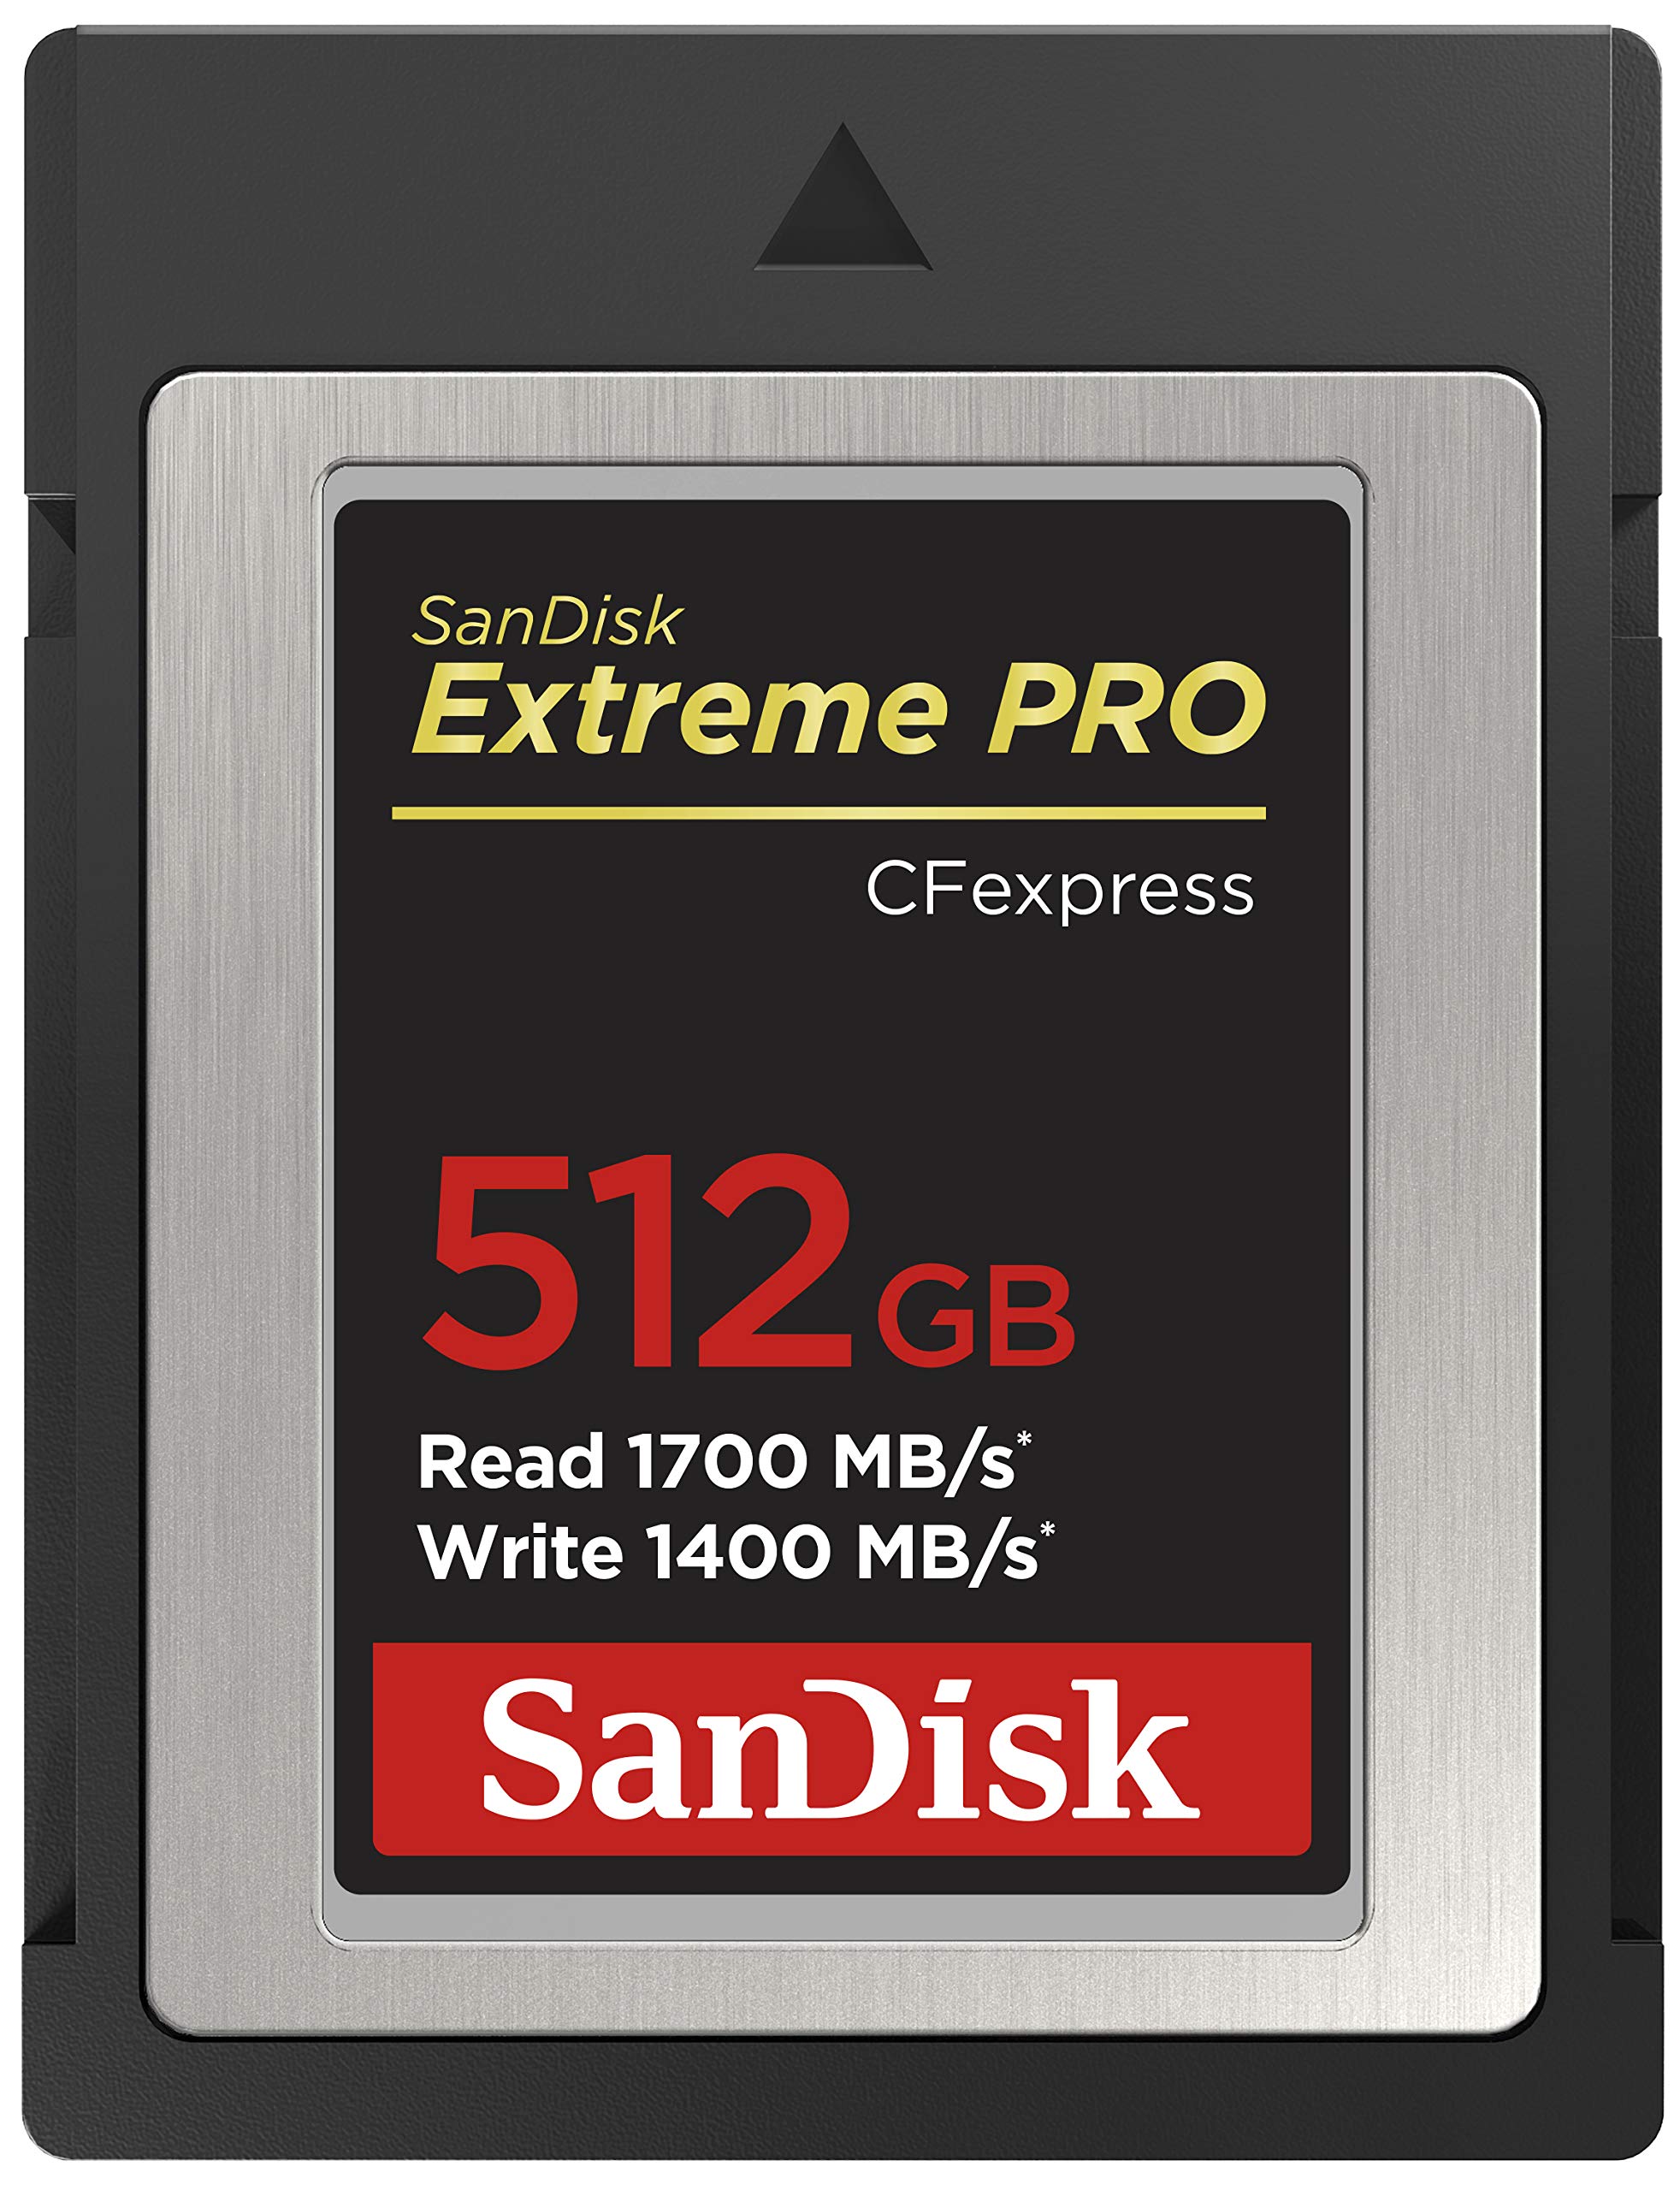 en ligne SanDisk 512GB Extreme PRO carte CFexpress Type B enregistrement vidéo RAW 4K + RescuePro Deluxe jusqu´à 1700 Mo/s rruR1Is4V tout pour vous